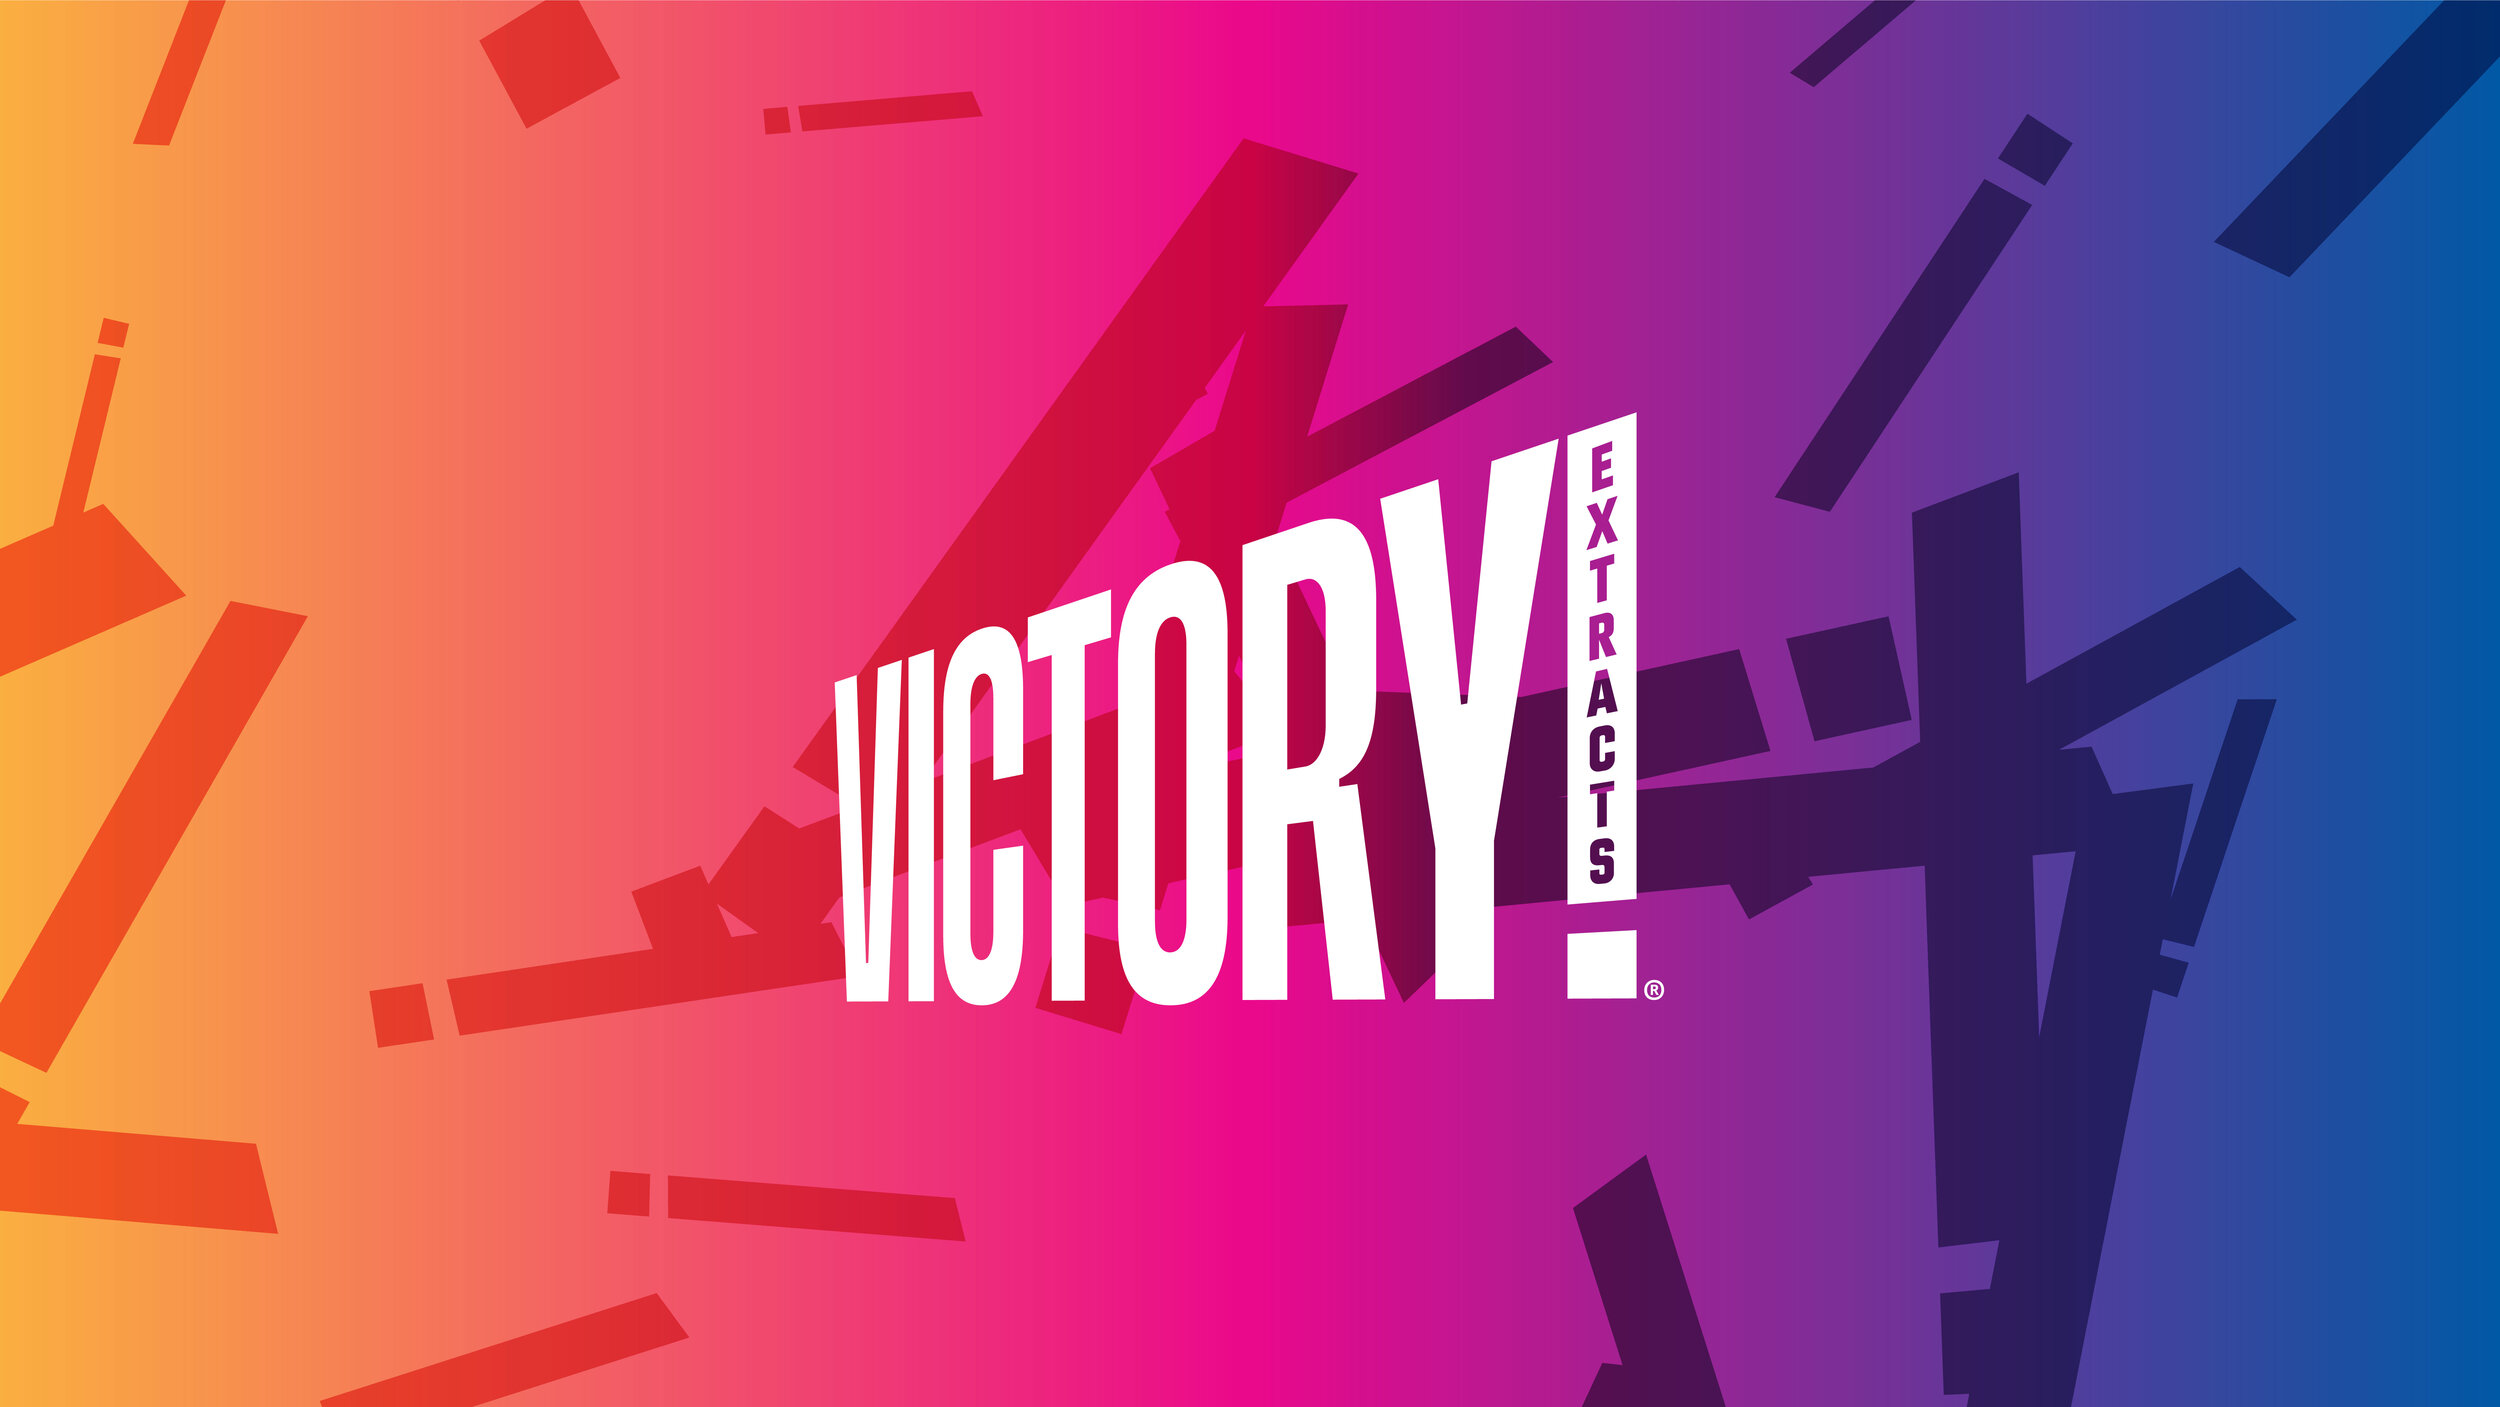 Victory_Portfolio-06.jpg